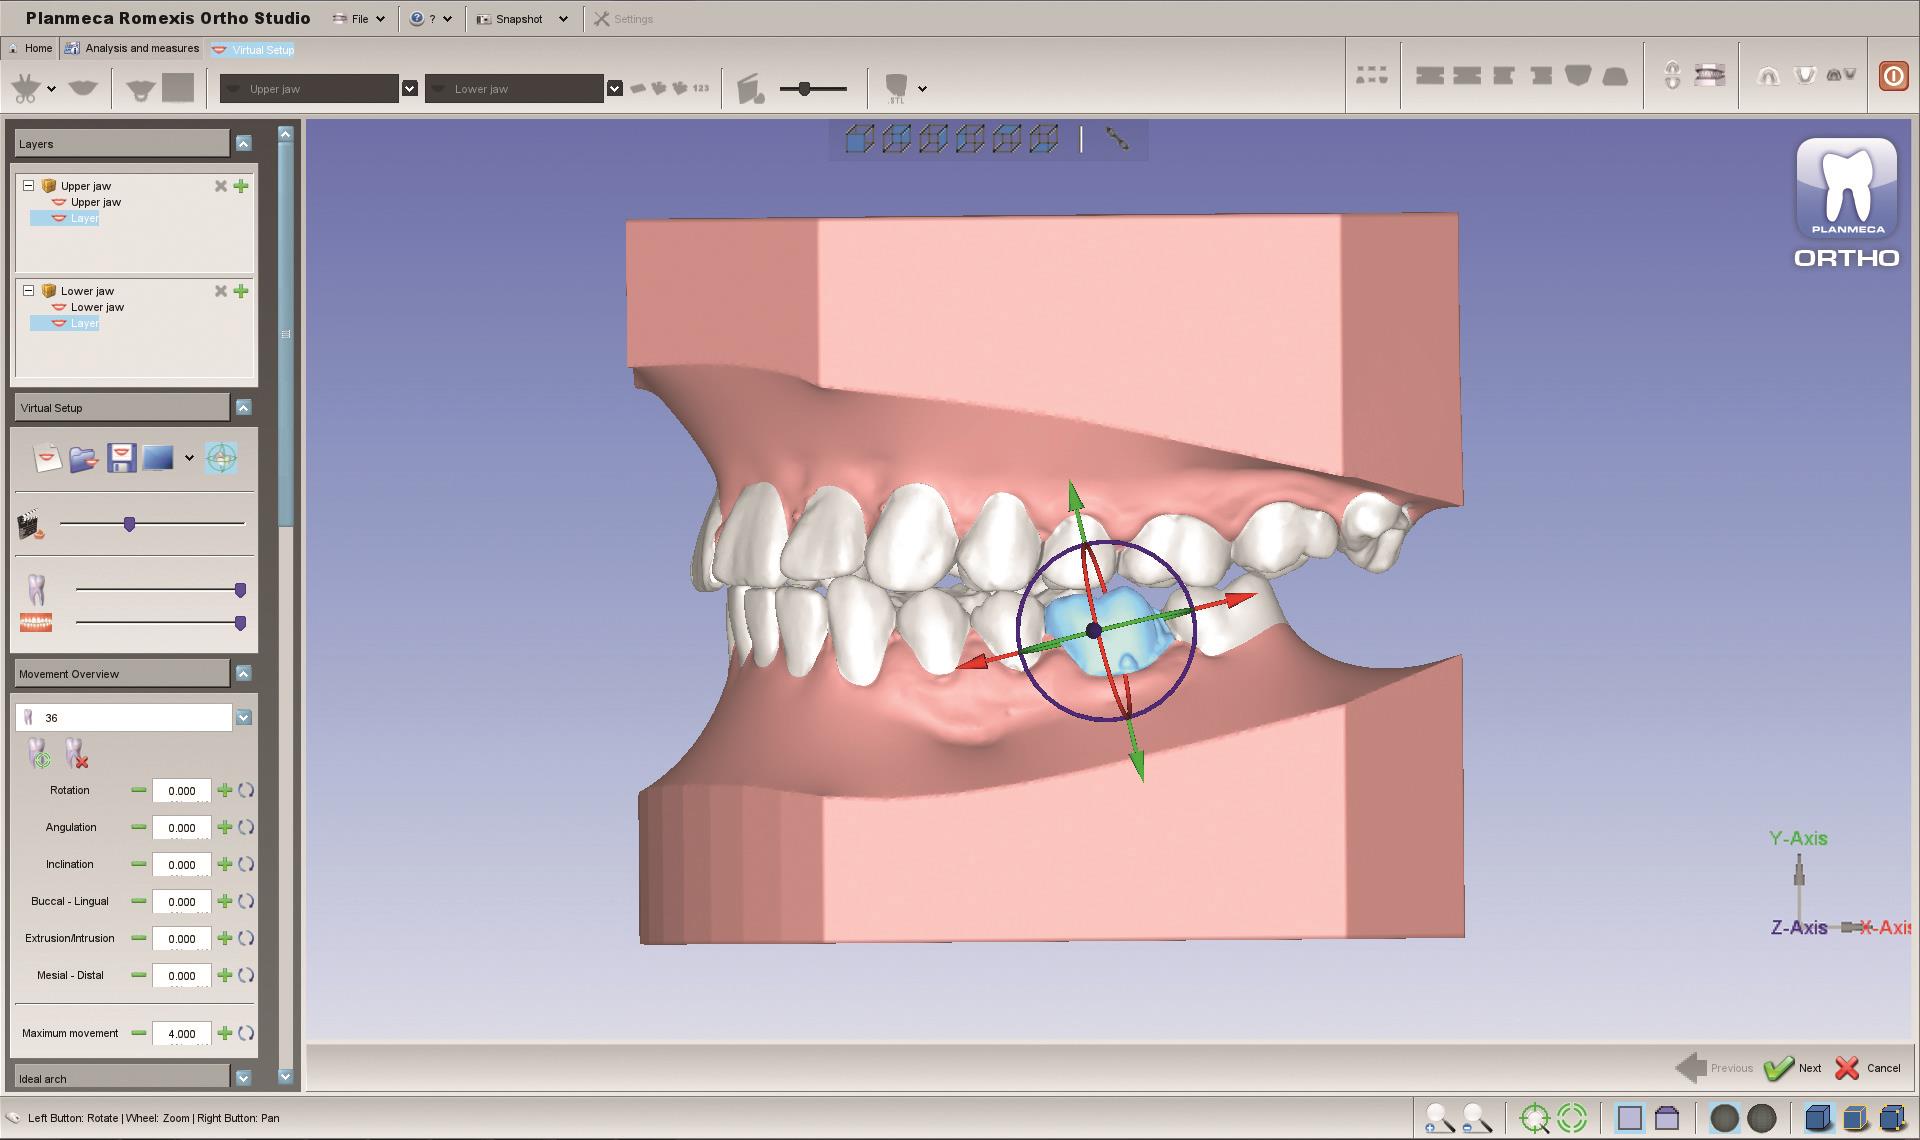 Компания Planmeca внедряет новые трёхмерные инструменты для стоматологов-ортодонтов и стоматологических лабораторий